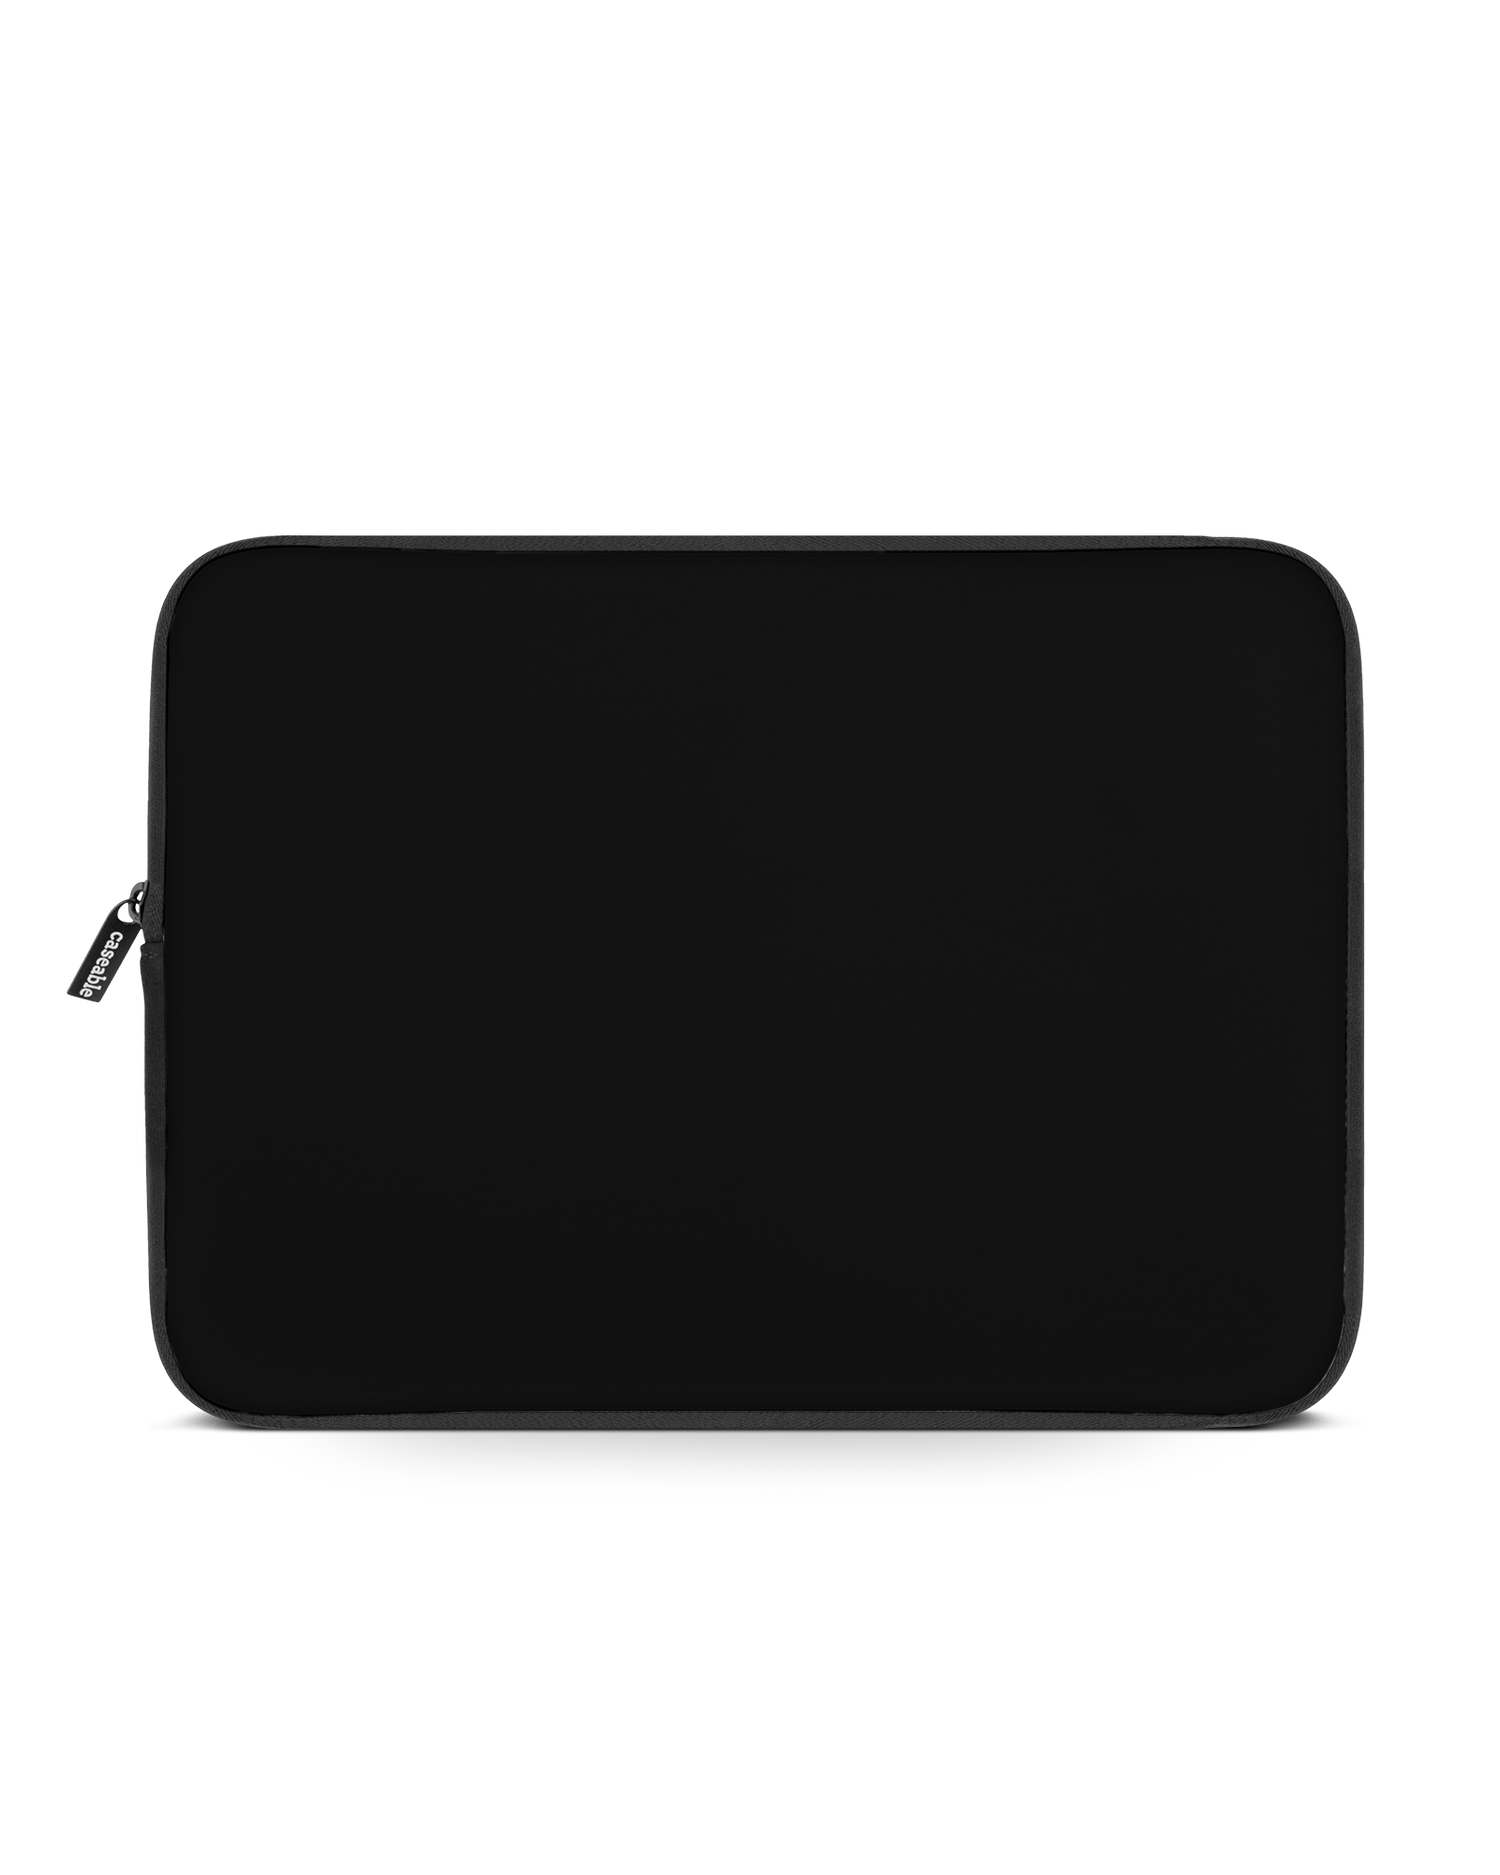 BLACK Laptophülle 15 Zoll: Vorderansicht